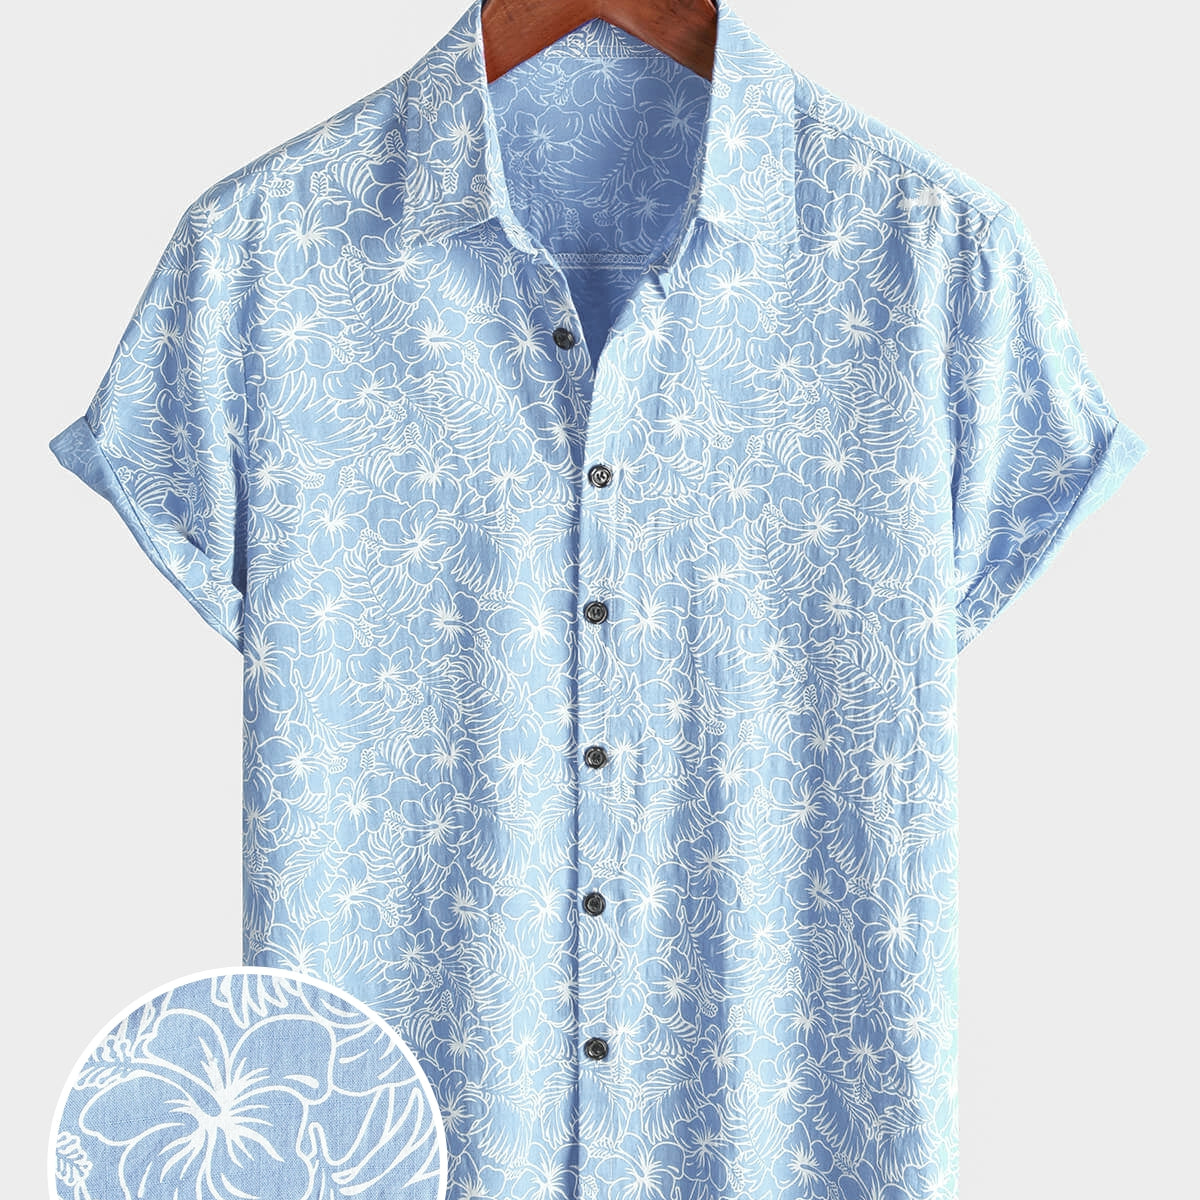 Men's Cotton Floral Holiday Flower Print Button Up Beach Light Blue Hawaiian Short Sleeve Shirt